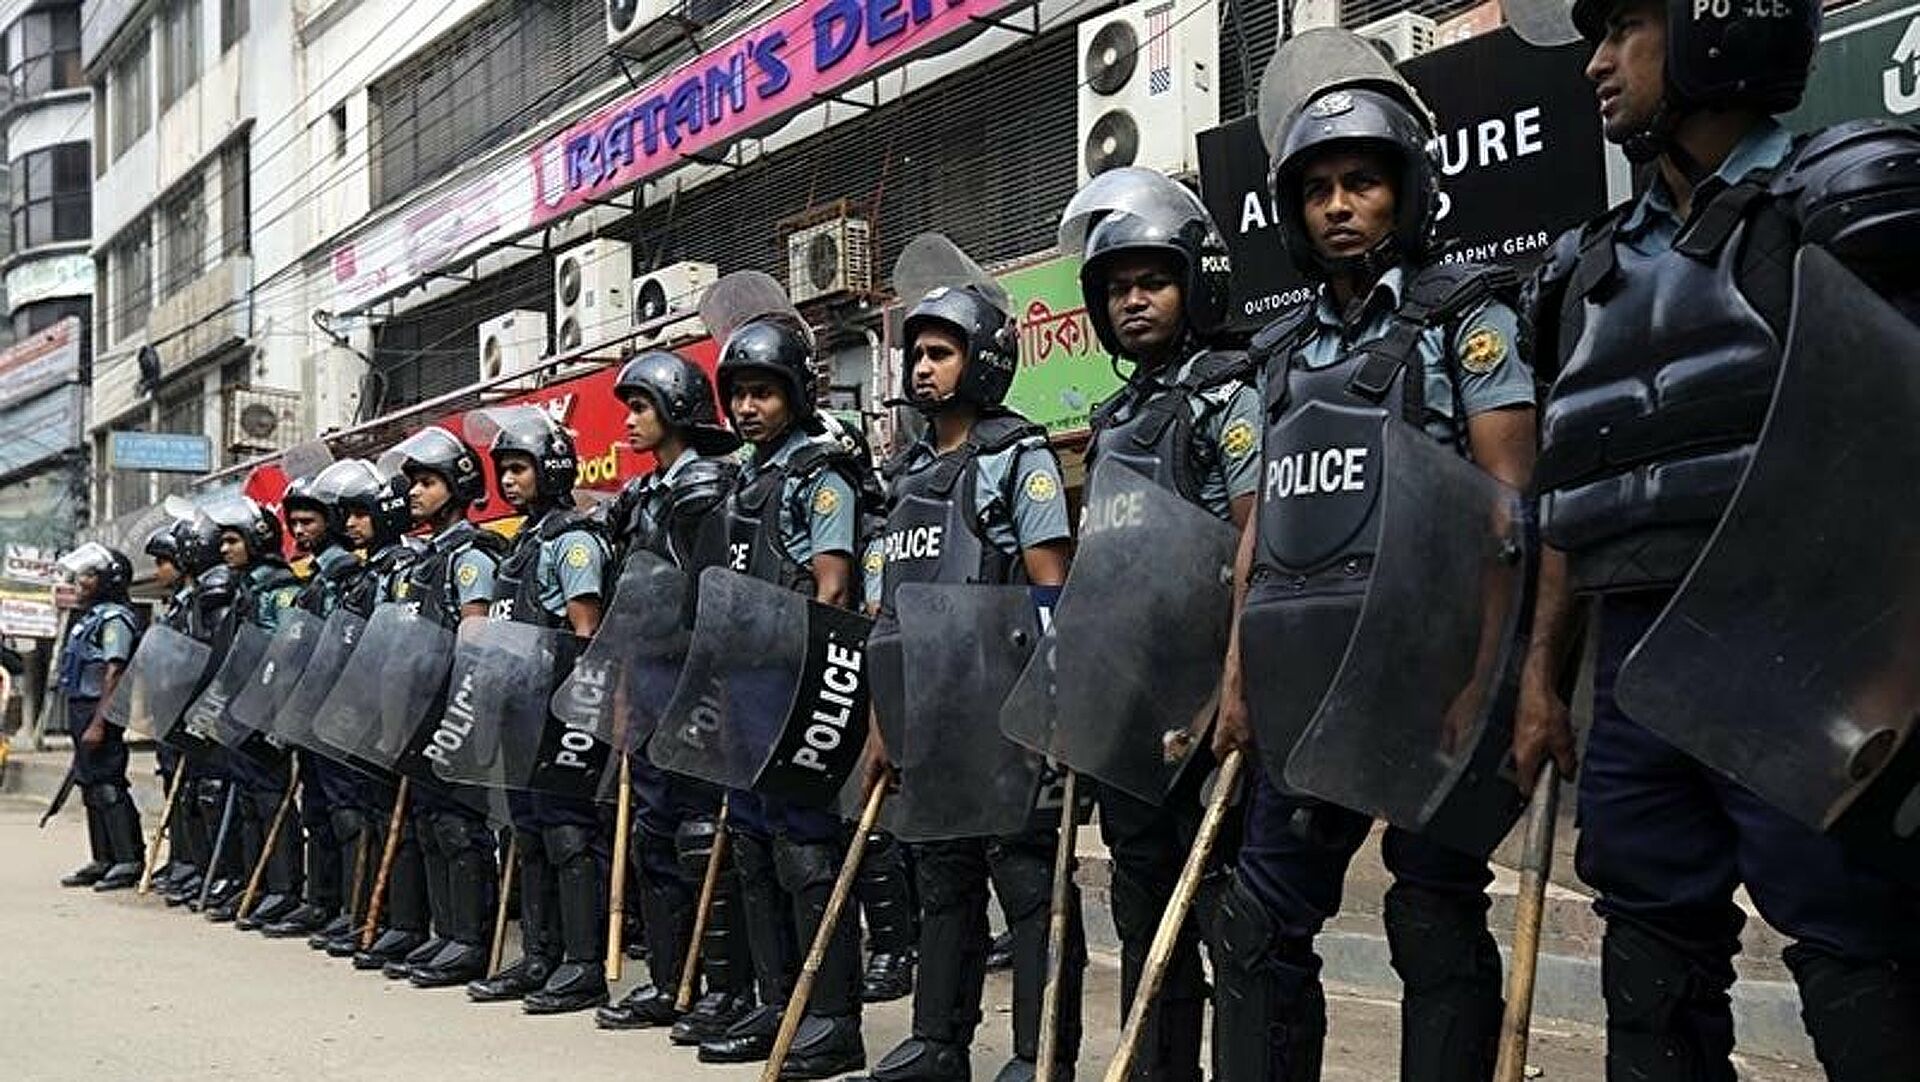  بنغلاديش.. إعدام 20 طالبا بعد إدناتهم بقتل شاب انتقد الحكومة